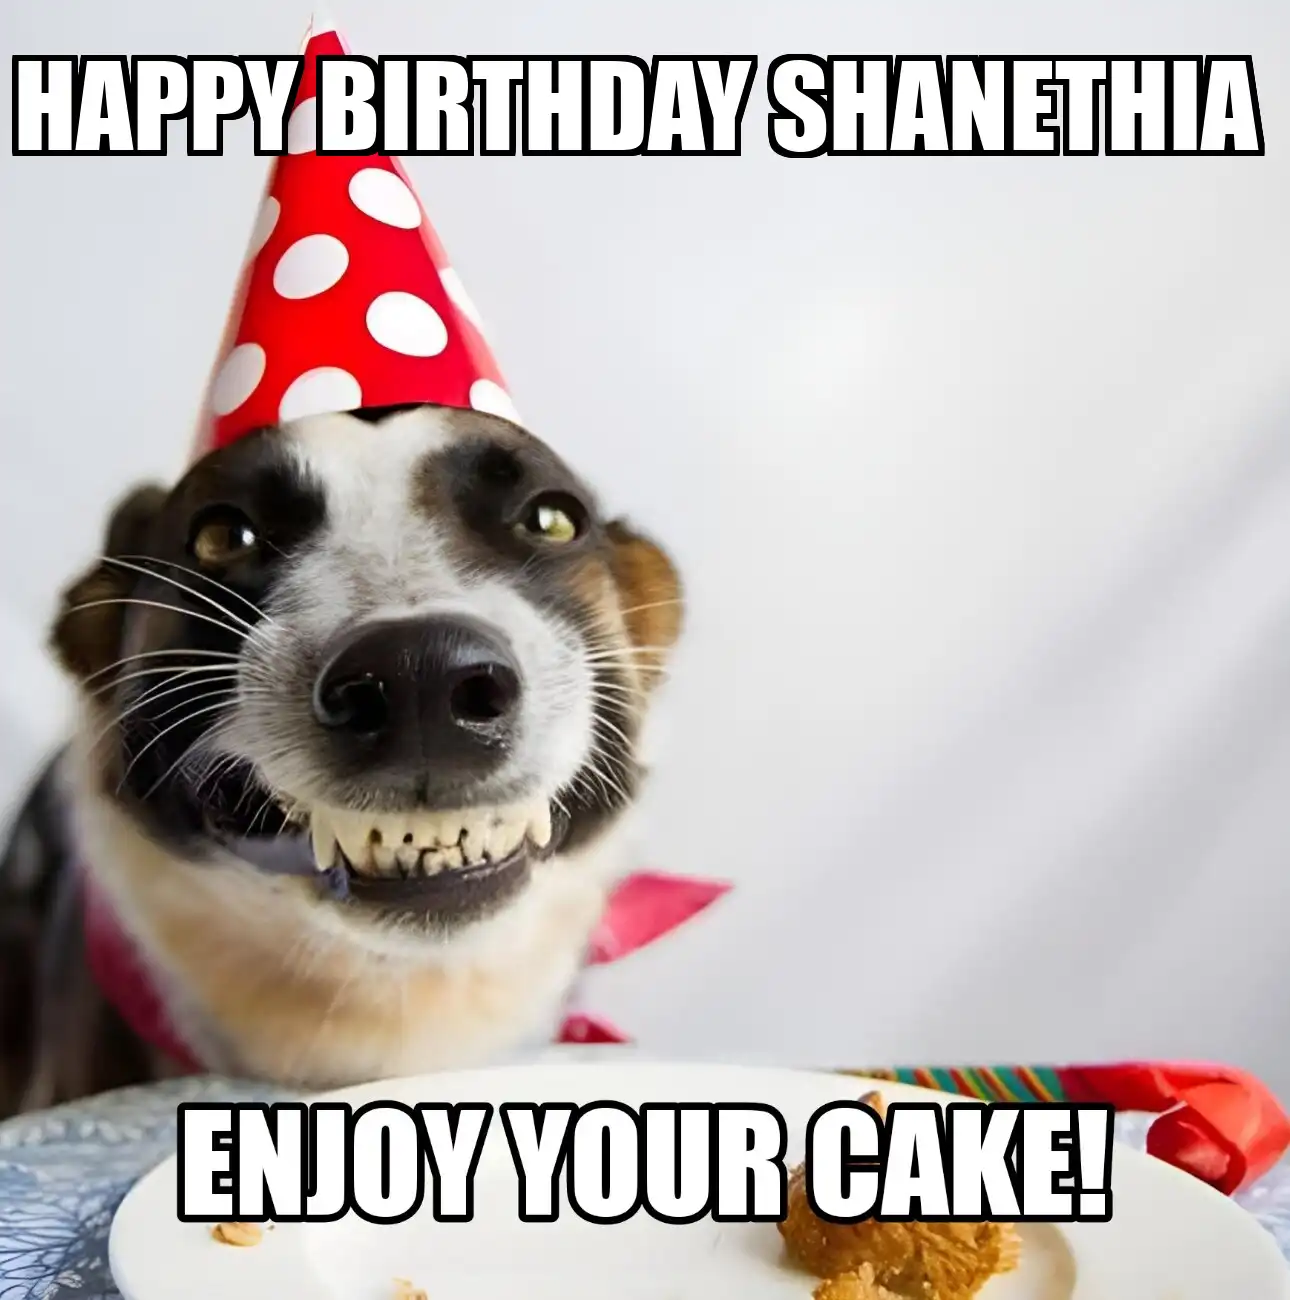 Happy Birthday Shanethia Enjoy Your Cake Dog Meme